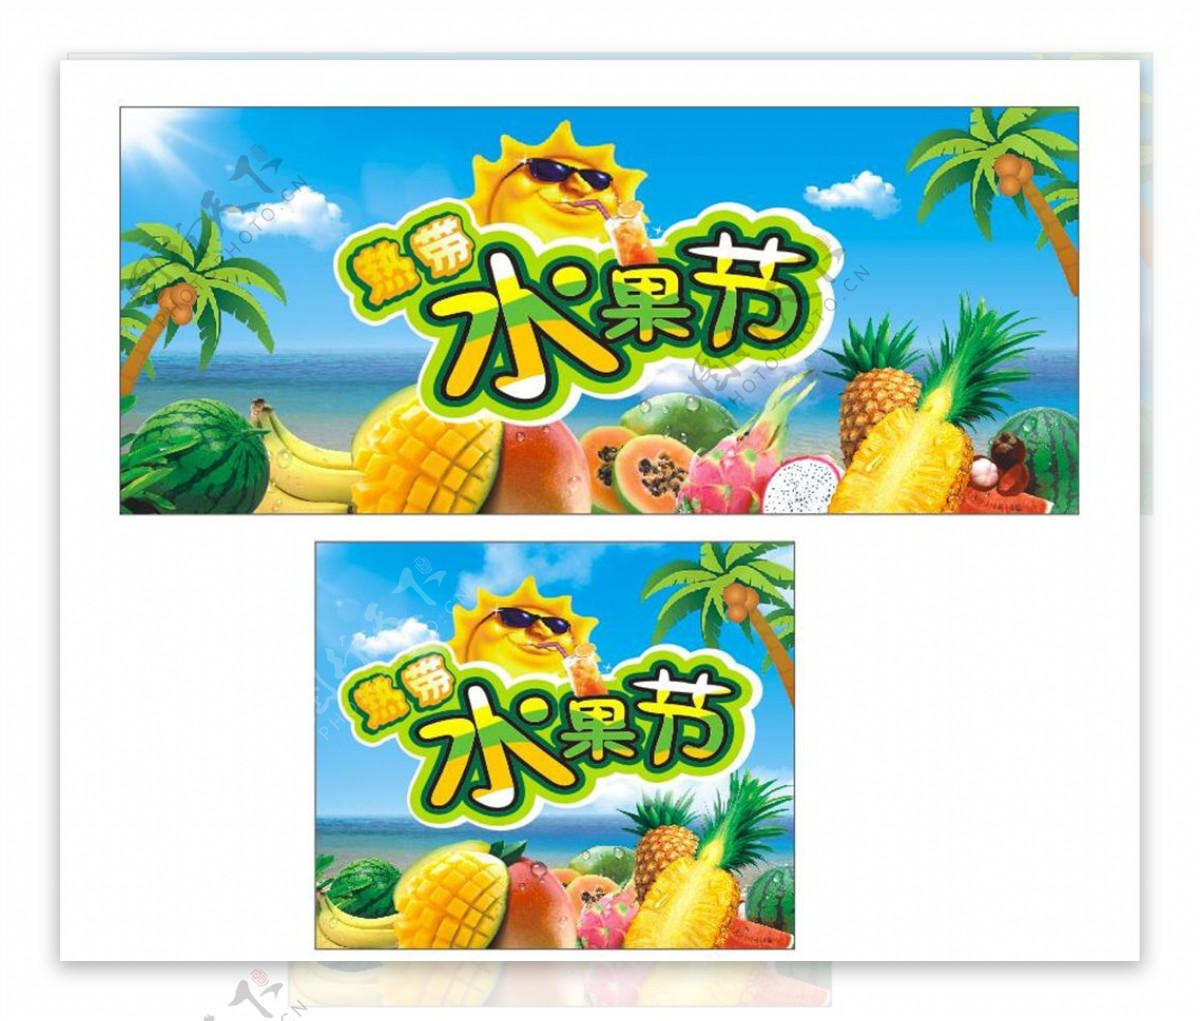 热带水果水果节广告宣传